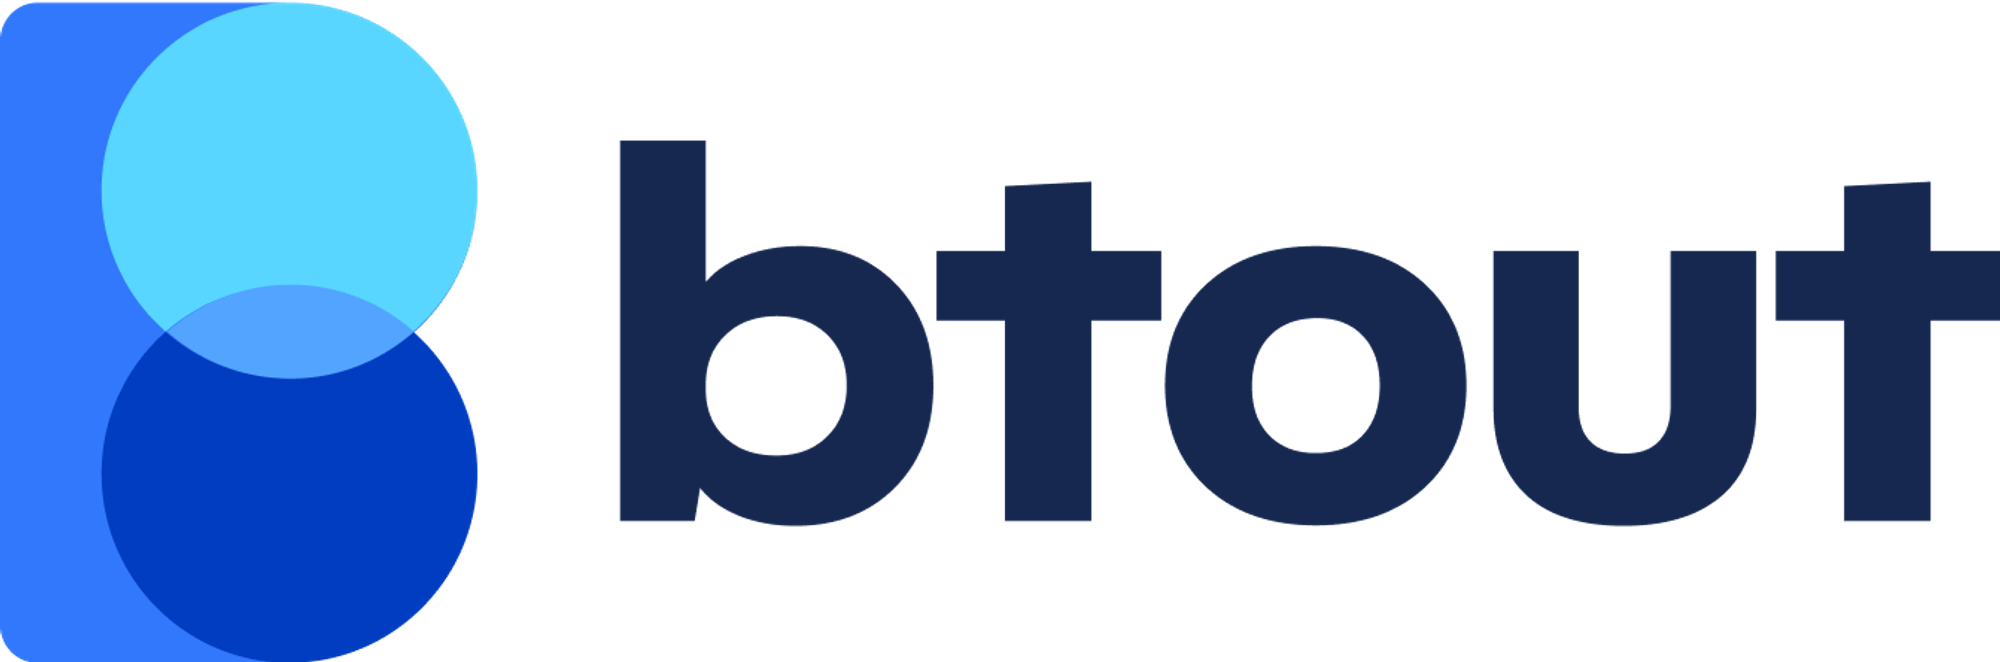 Modern logo design for btout.com